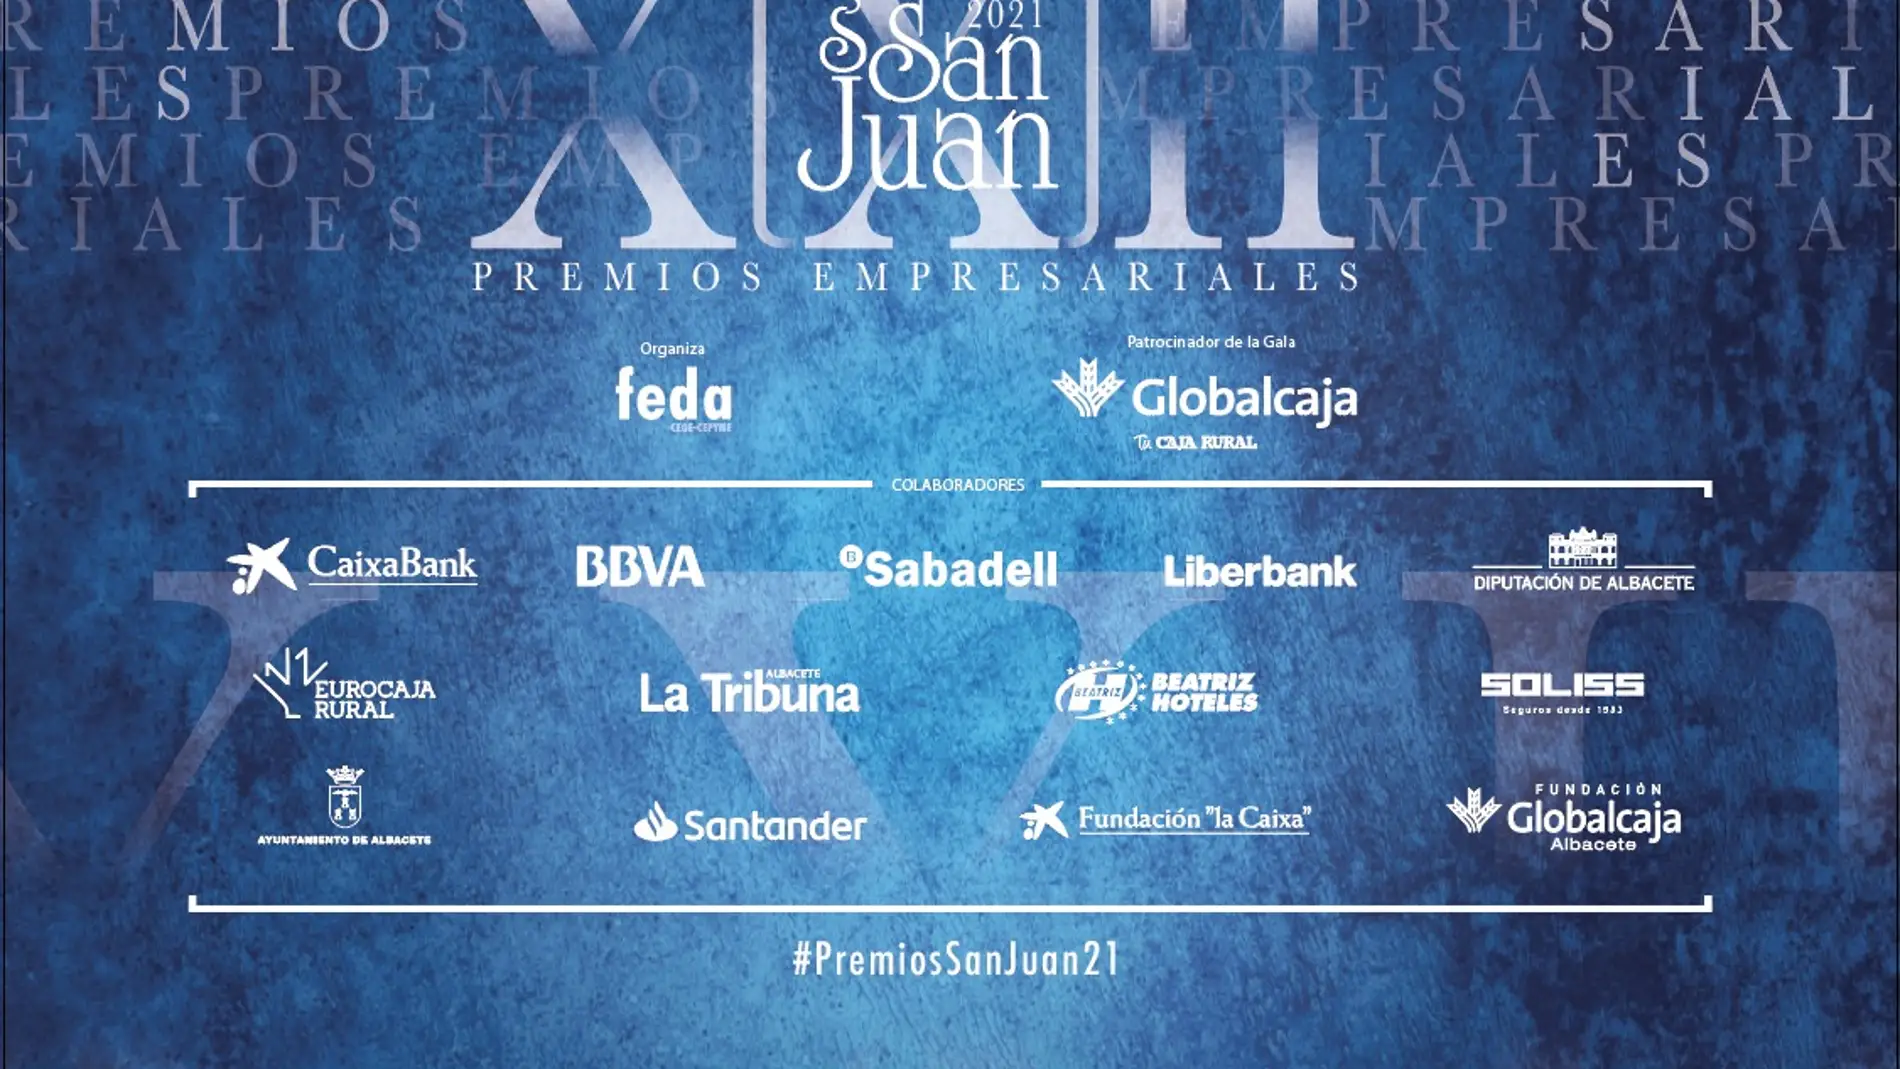 Premios Empresariales San Juan 2021